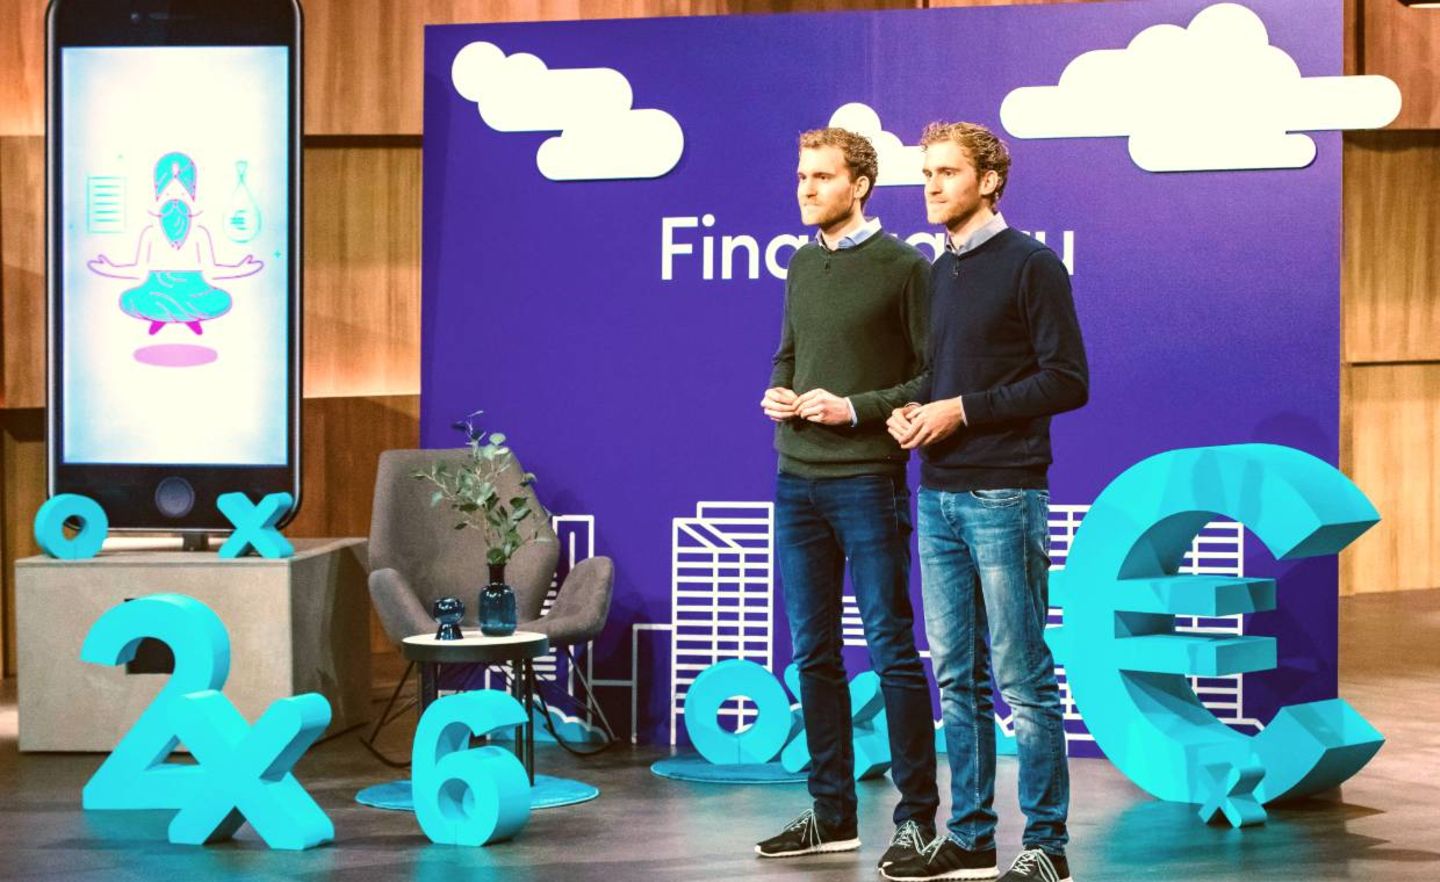 Alexander und Benjamin Michel wollen, dass Geldgeschäfte Spaß machen – mit ihrer App Finanzguru